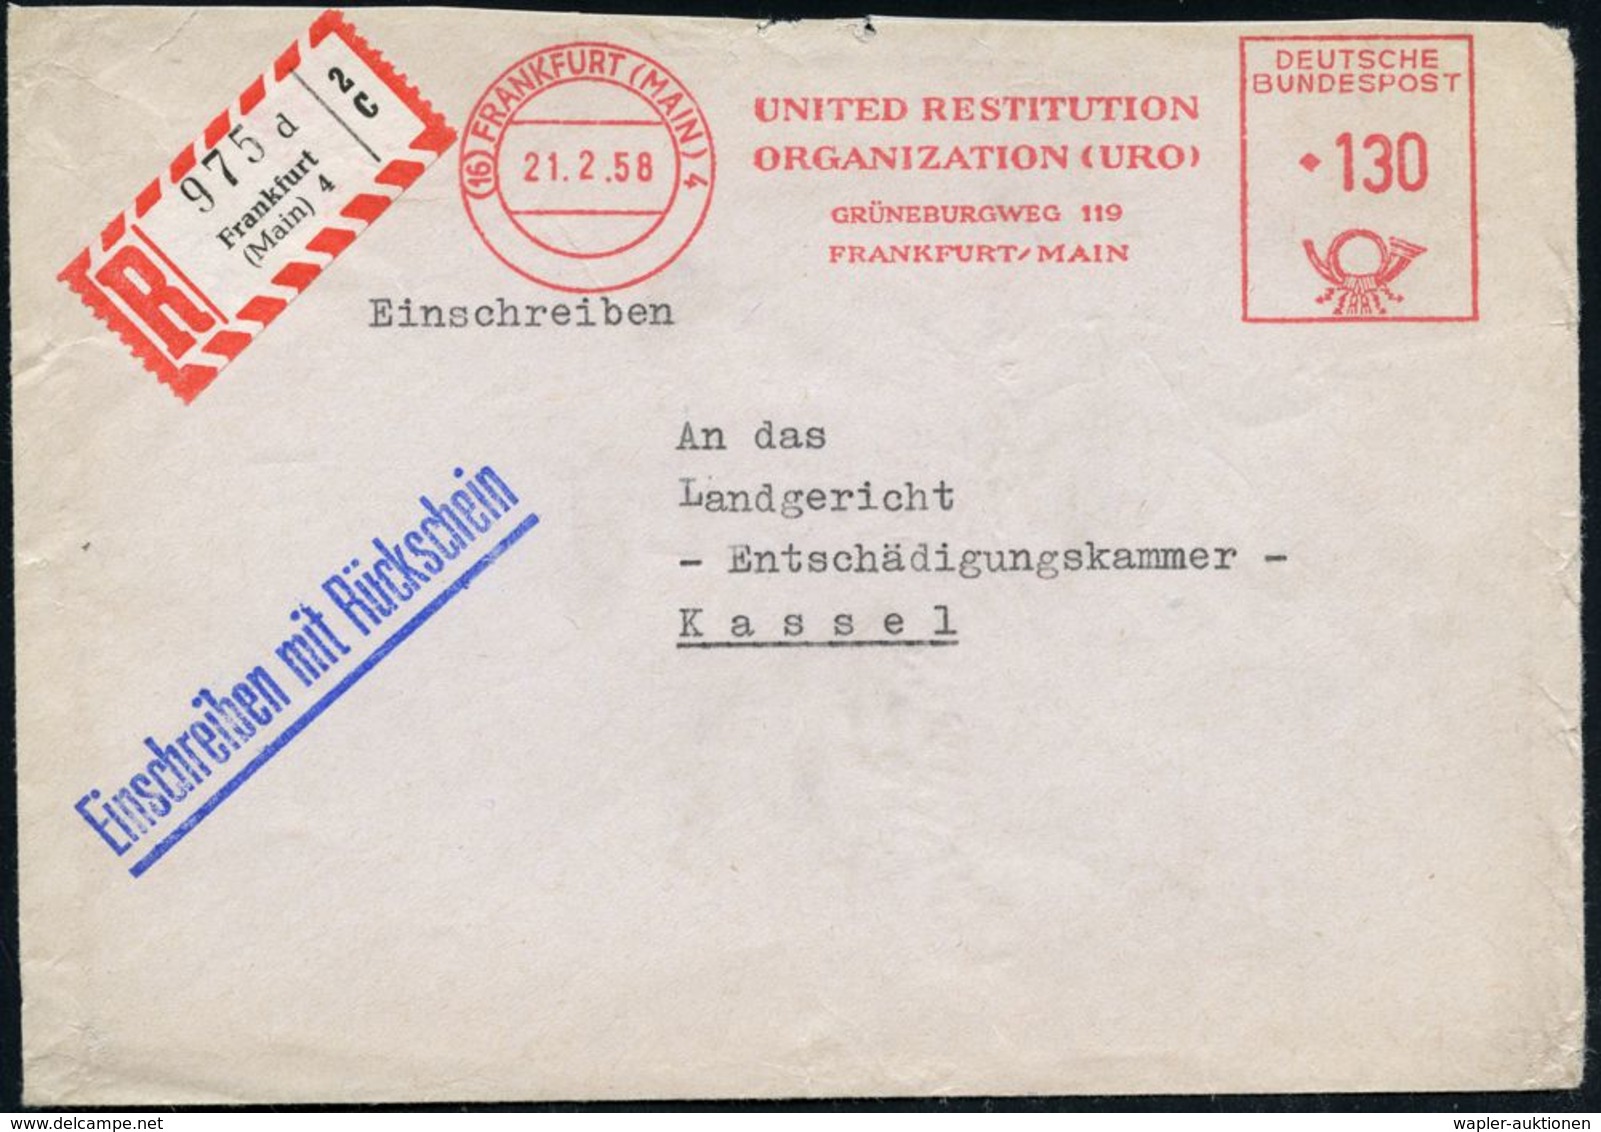 (16) FRANKFURT (MAIN)4/ UNITED RESTITUTION/ ORGANIZATION (URO).. 1958 (21.2.) AFS 130 Pf. + RZ: Frankfurt/(Main) 4/d (ob - Judaika, Judentum